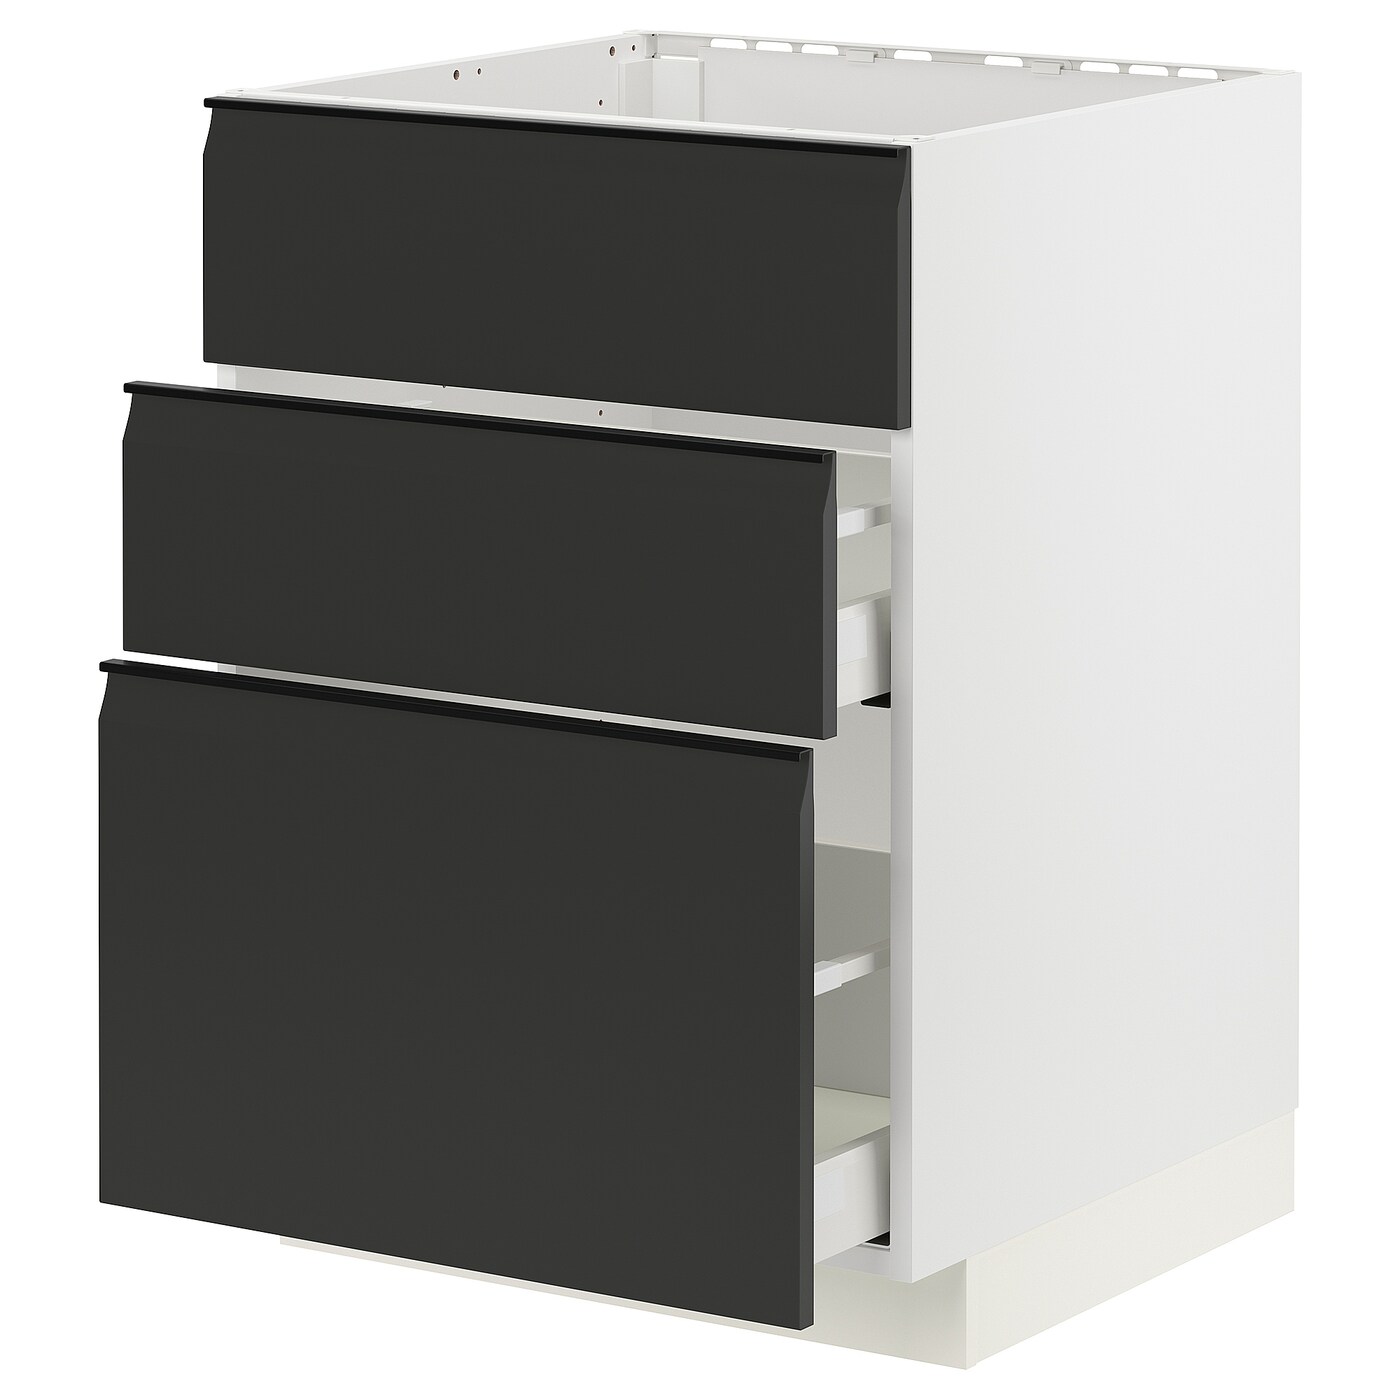 Напольный кухонный шкаф  - IKEA METOD MAXIMERA, 88x61,6x60см, белый/черный, МЕТОД МАКСИМЕРА ИКЕА